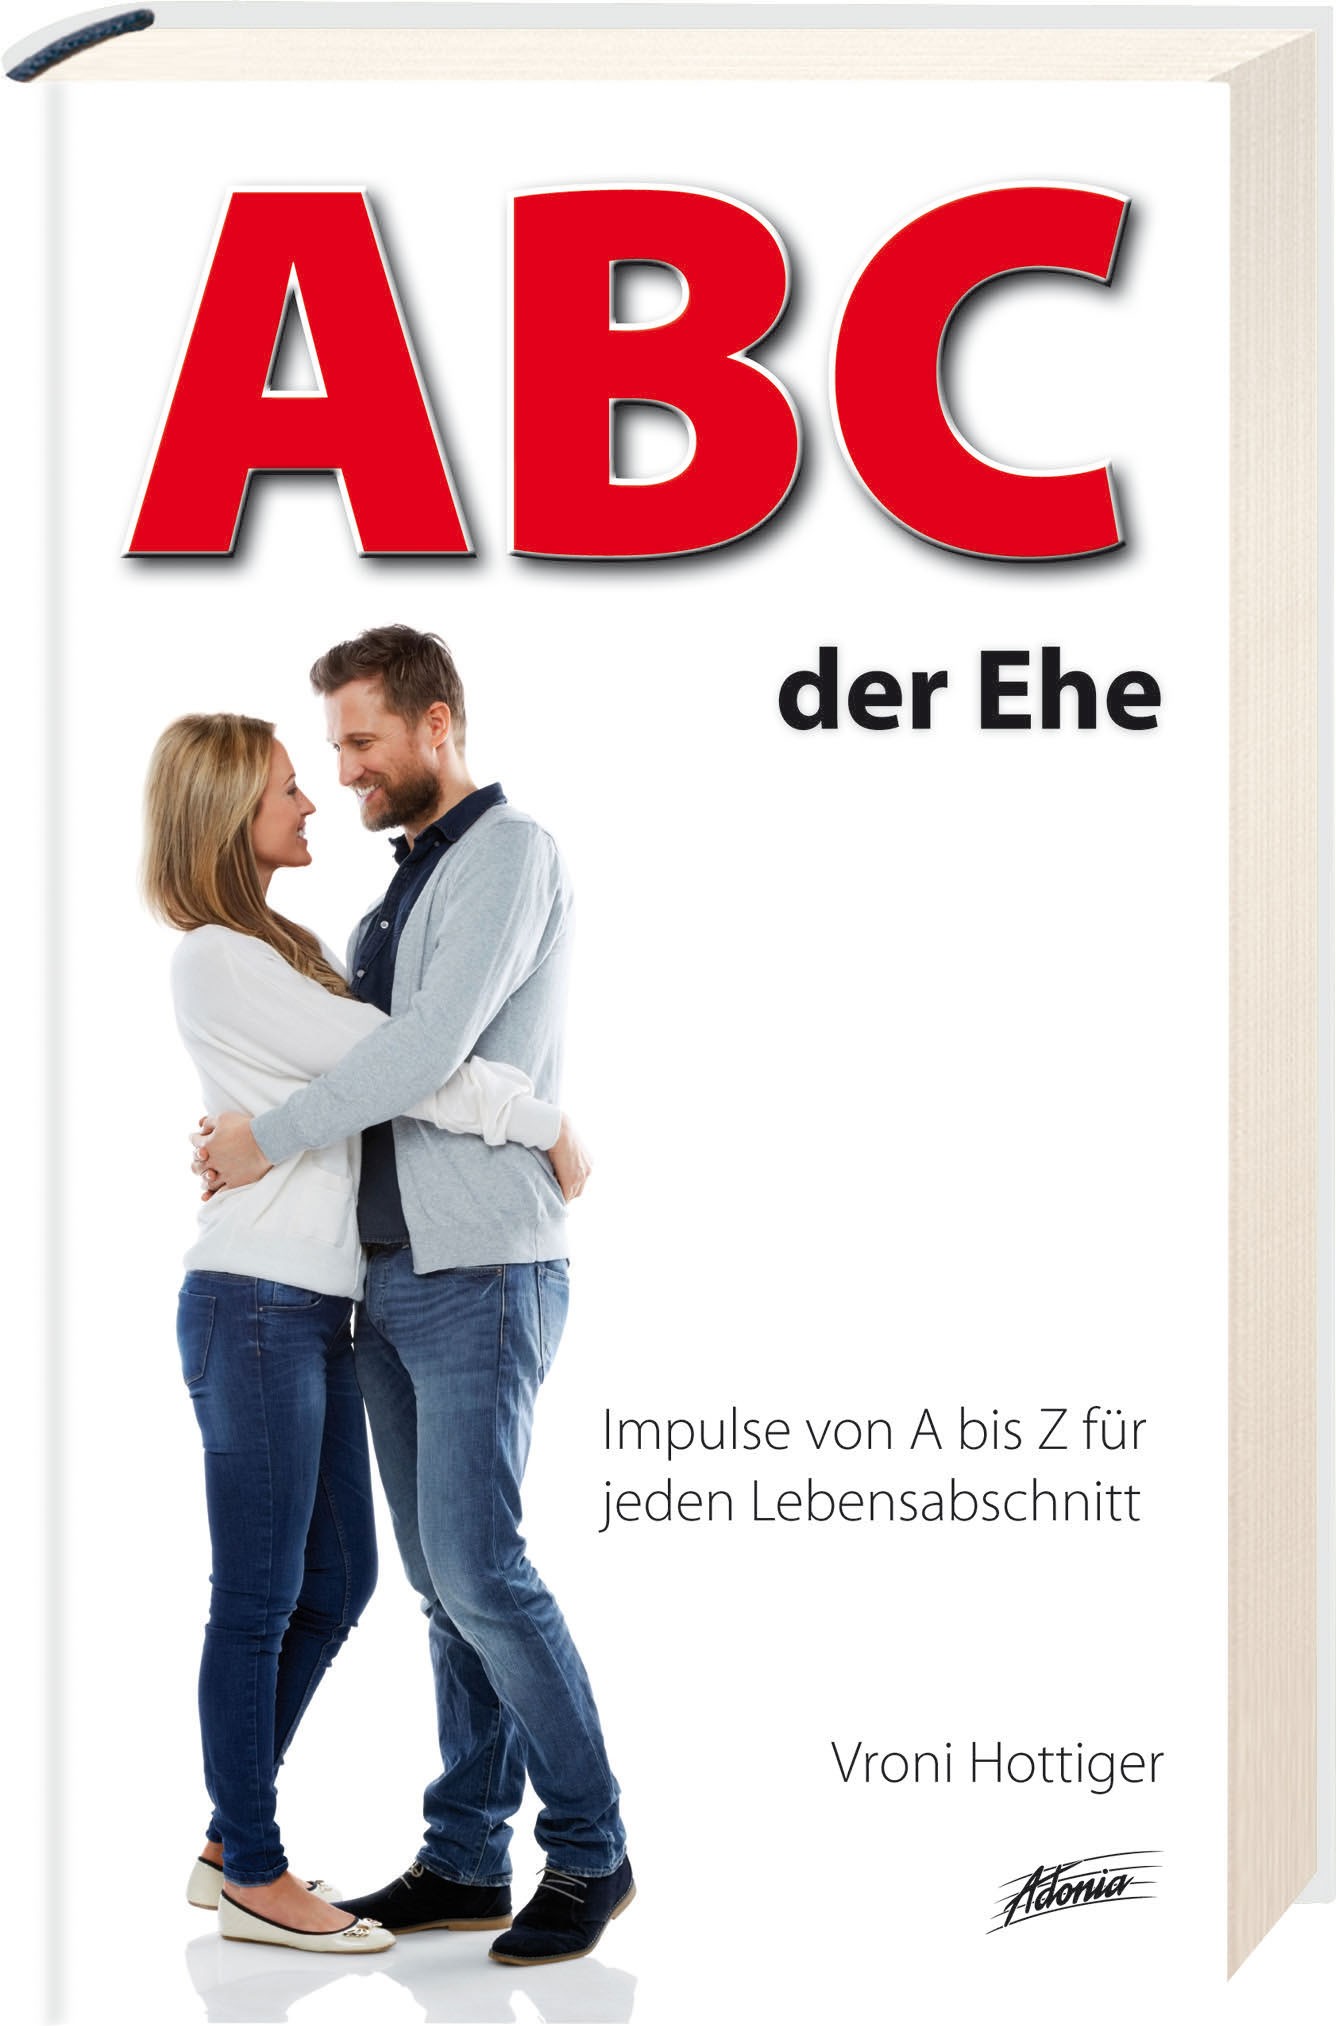 ABC der Ehe